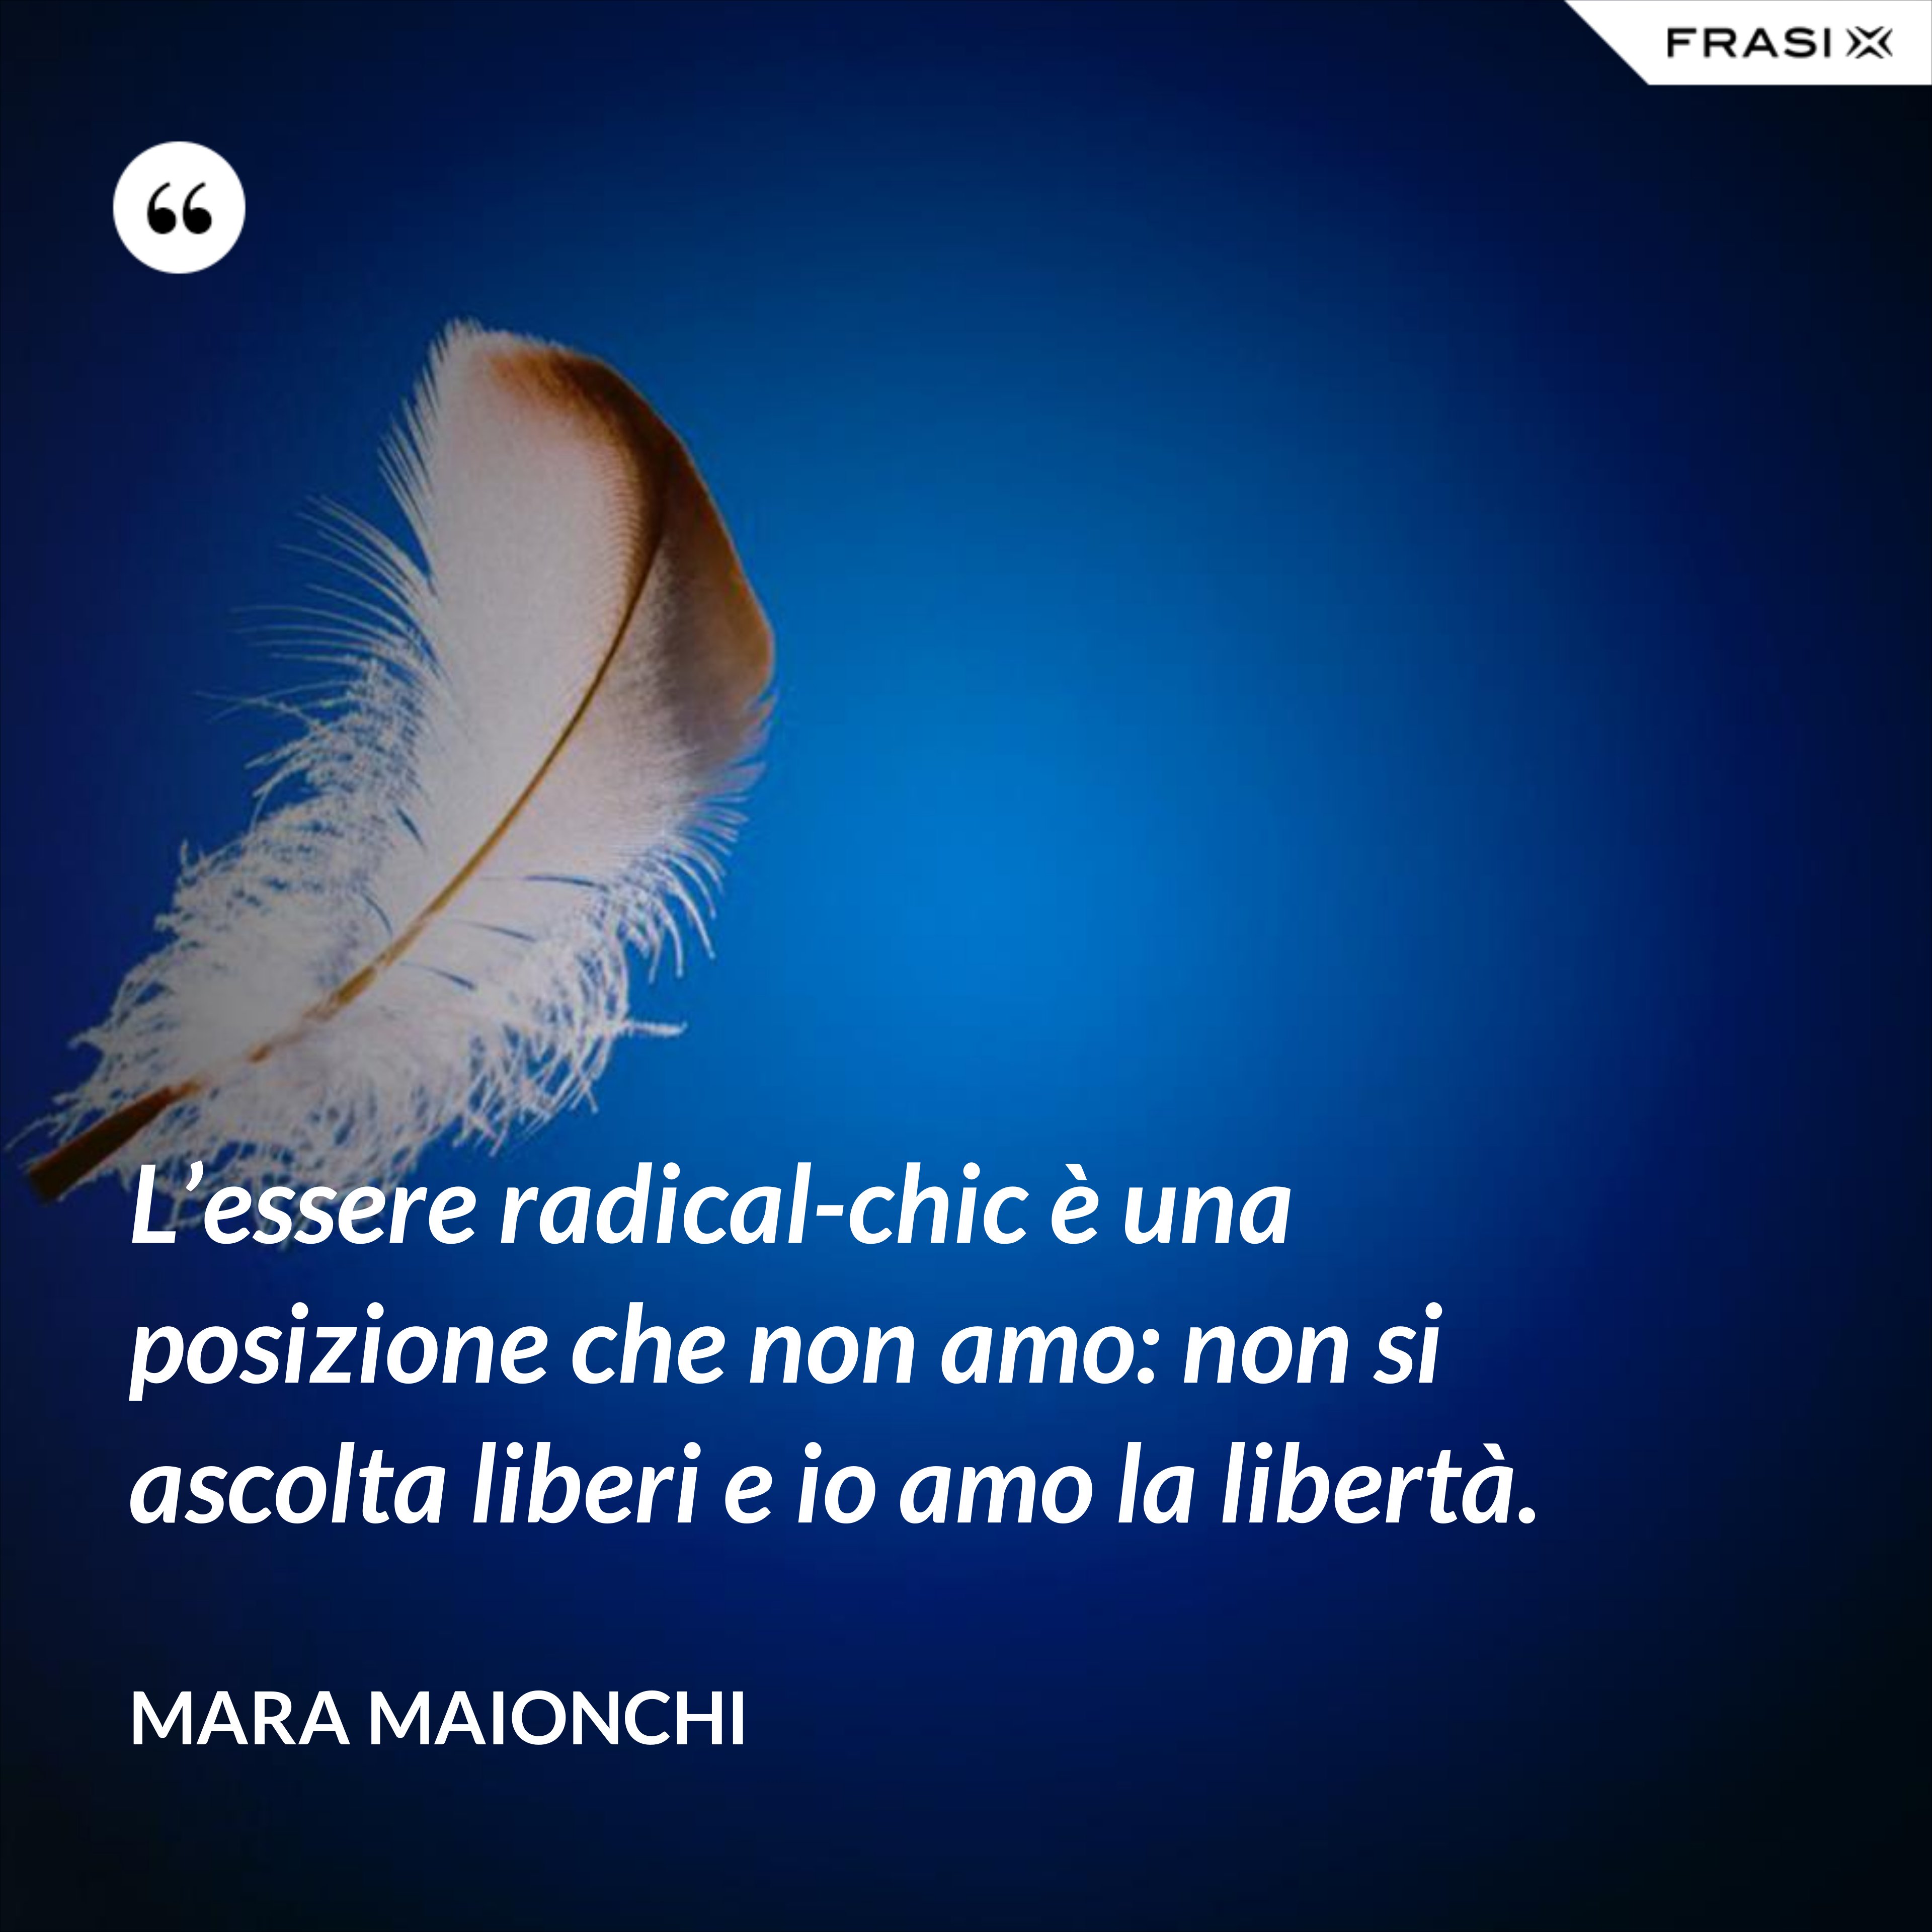 L’essere radical-chic è una posizione che non amo: non si ascolta liberi e io amo la libertà. - Mara Maionchi